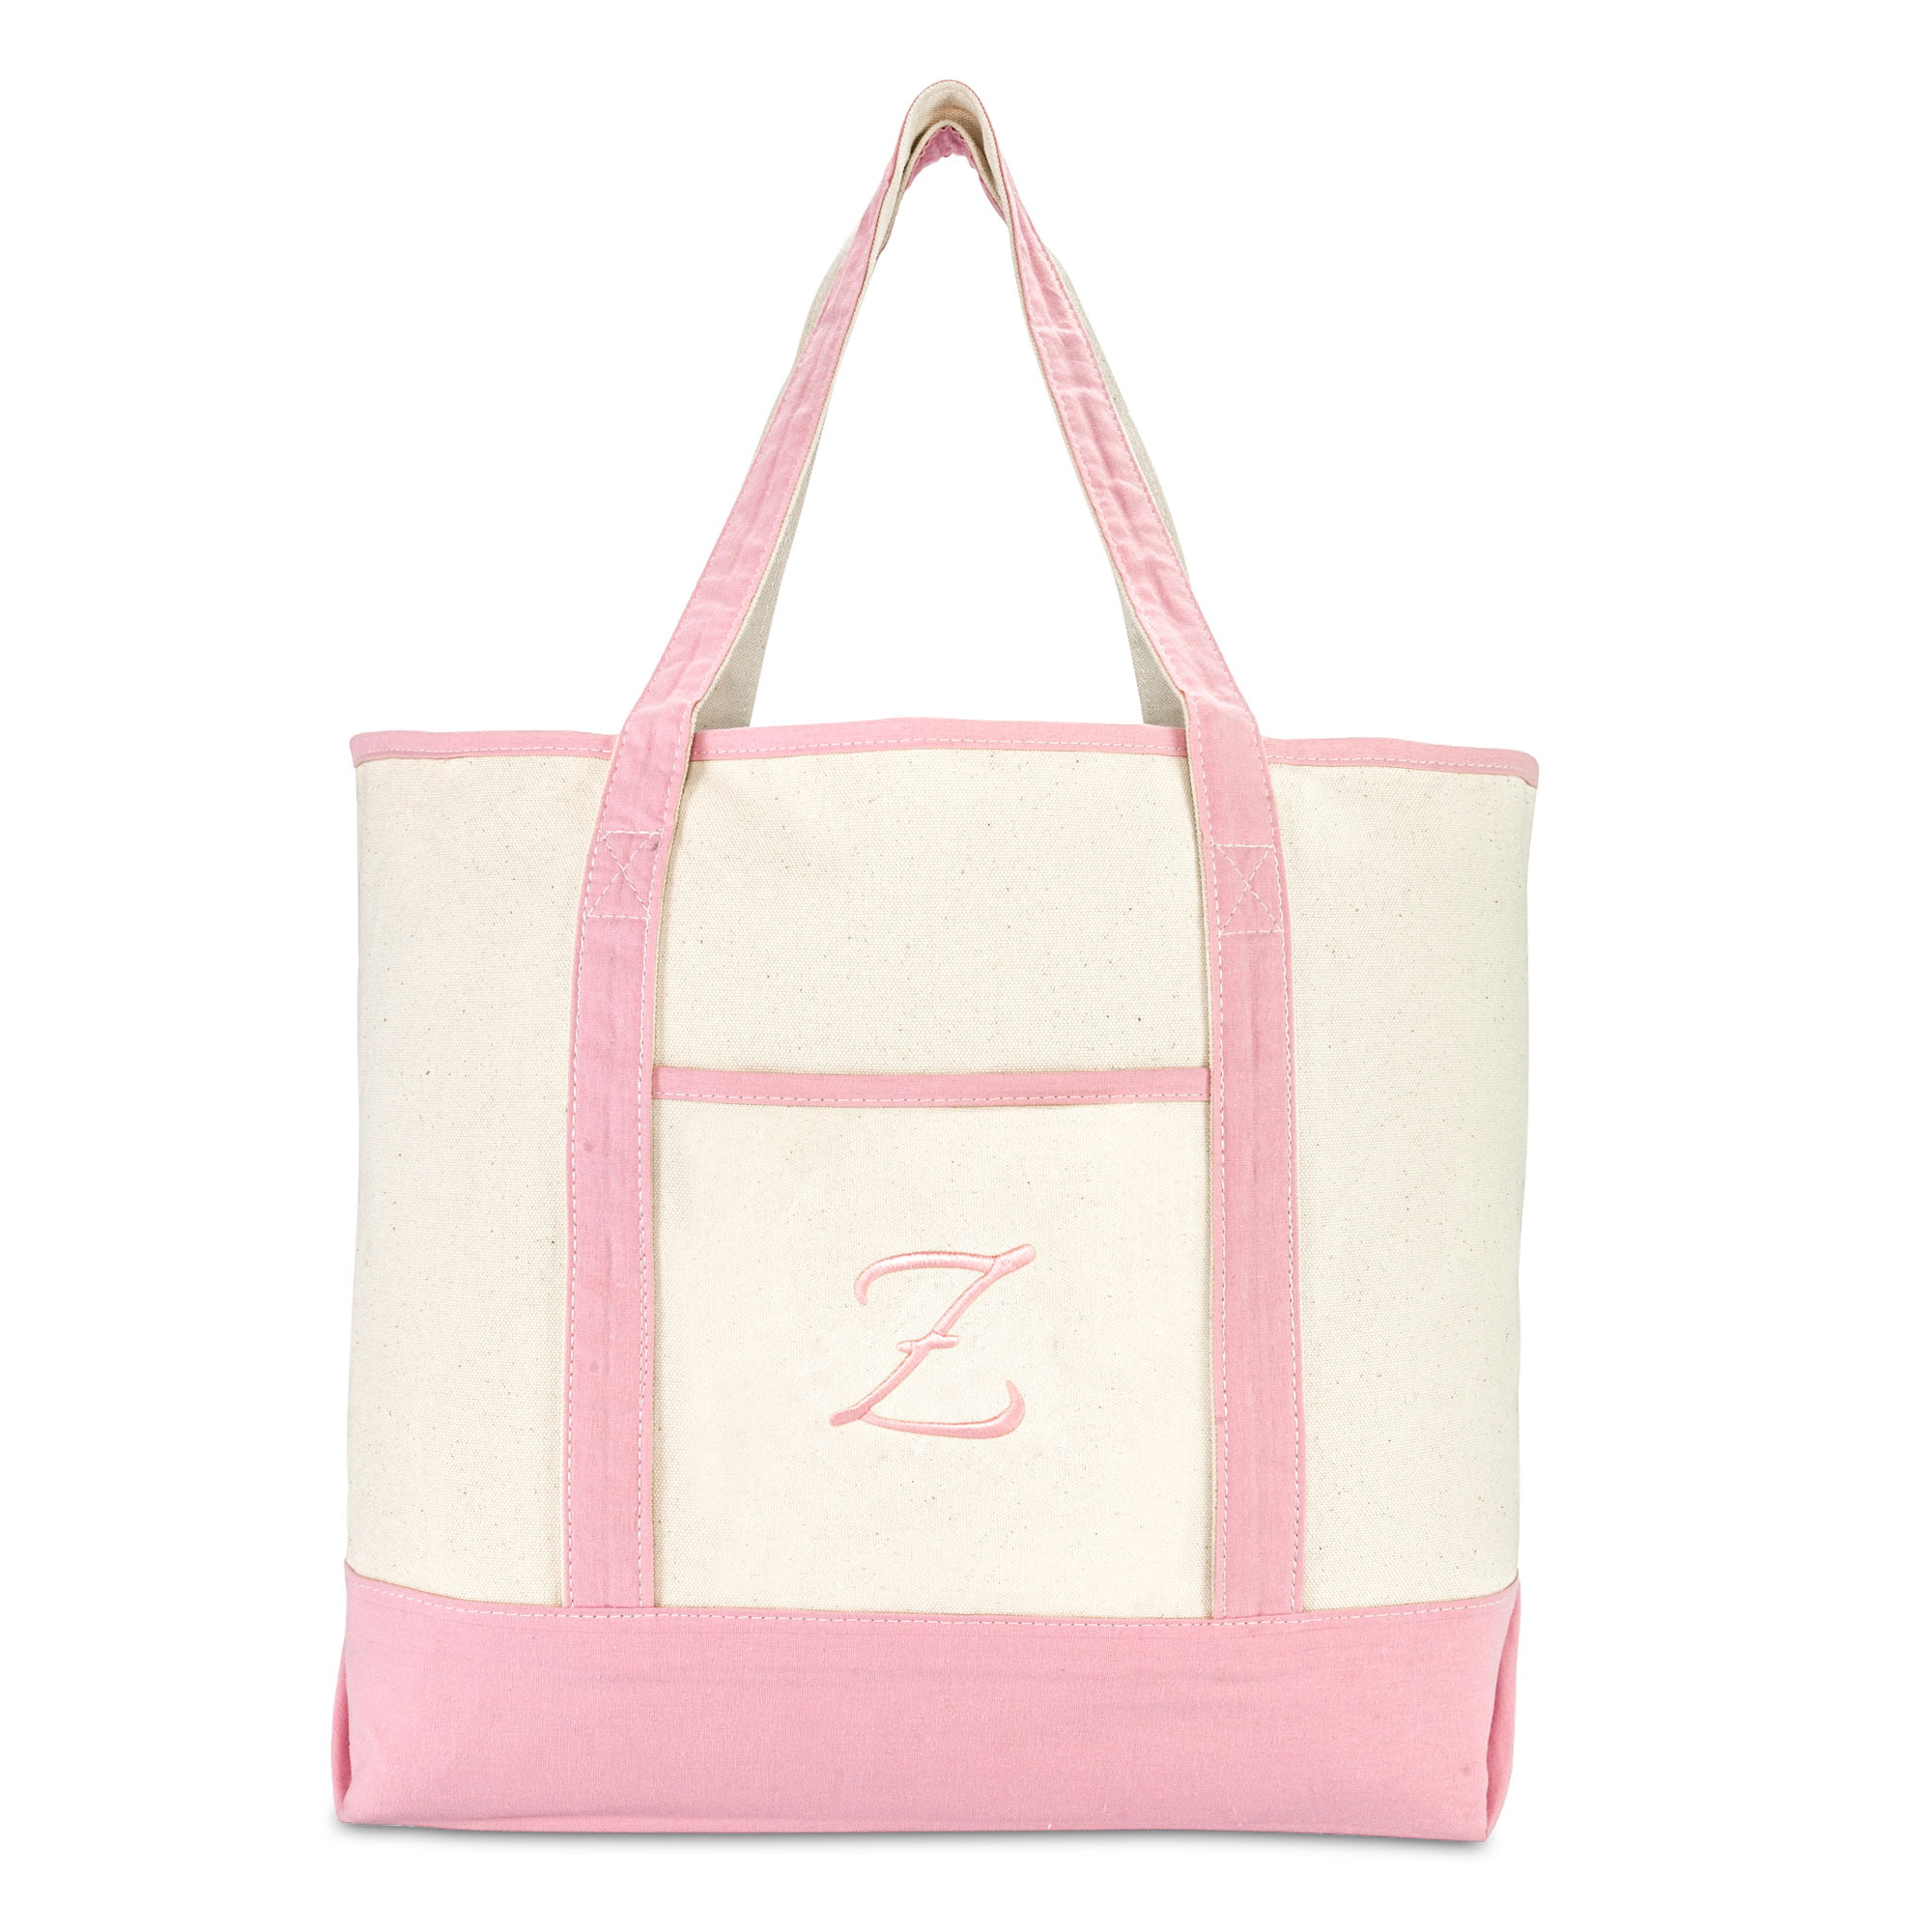 Z DALIX Womens Cotton Canvas Tote Bag Large Shoulder Bags Pink Monogram A